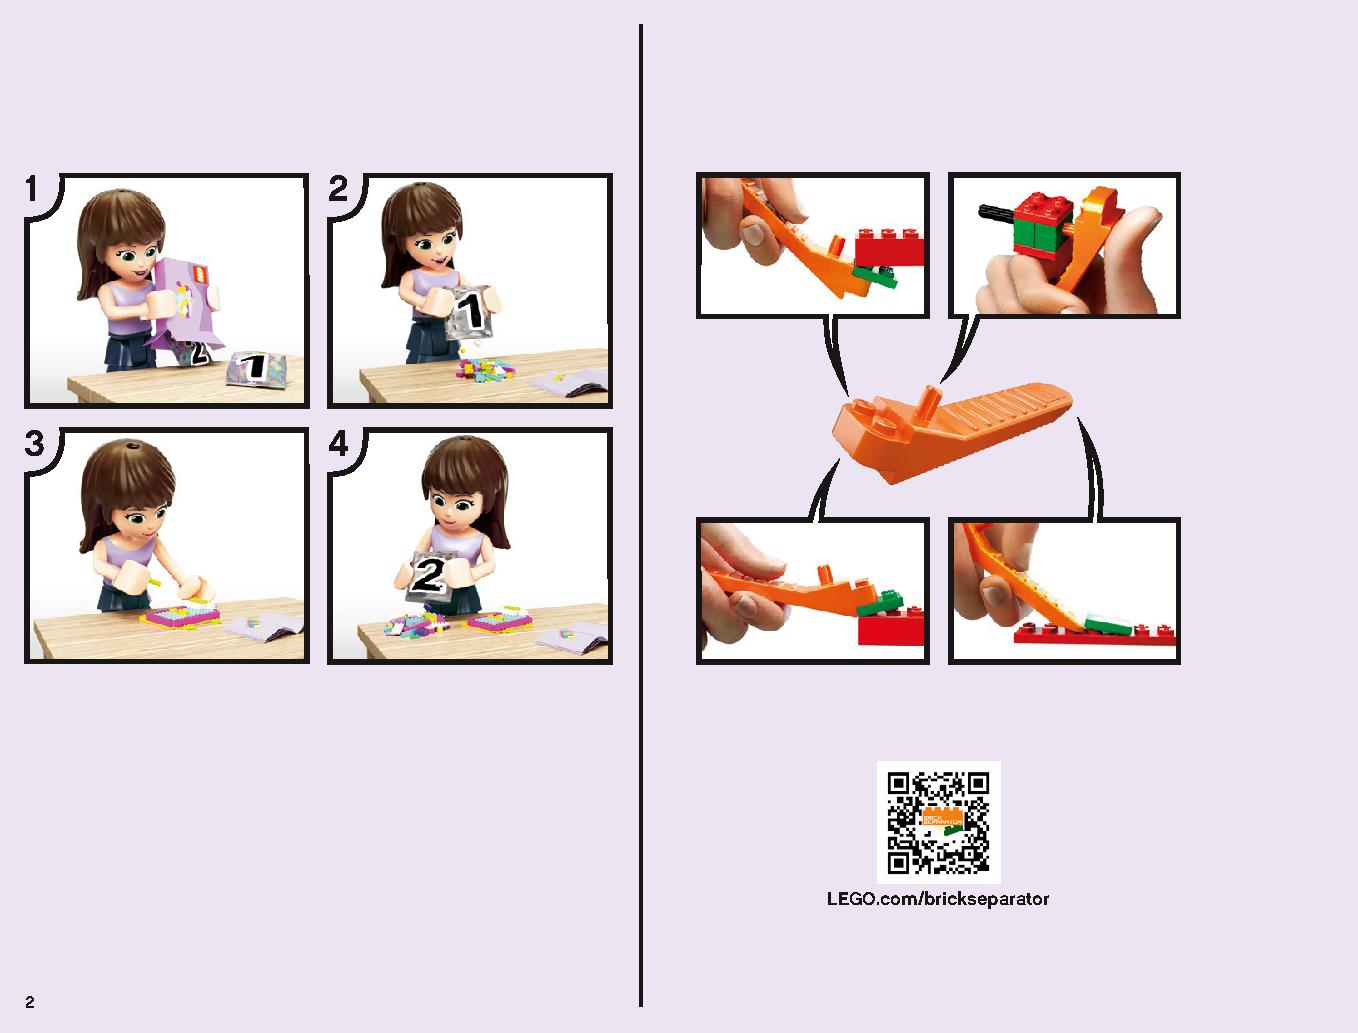 アナと雪の女王 “アイスキャッスル・ファンタジー” 43172 レゴの商品情報 レゴの説明書・組立方法 2 page